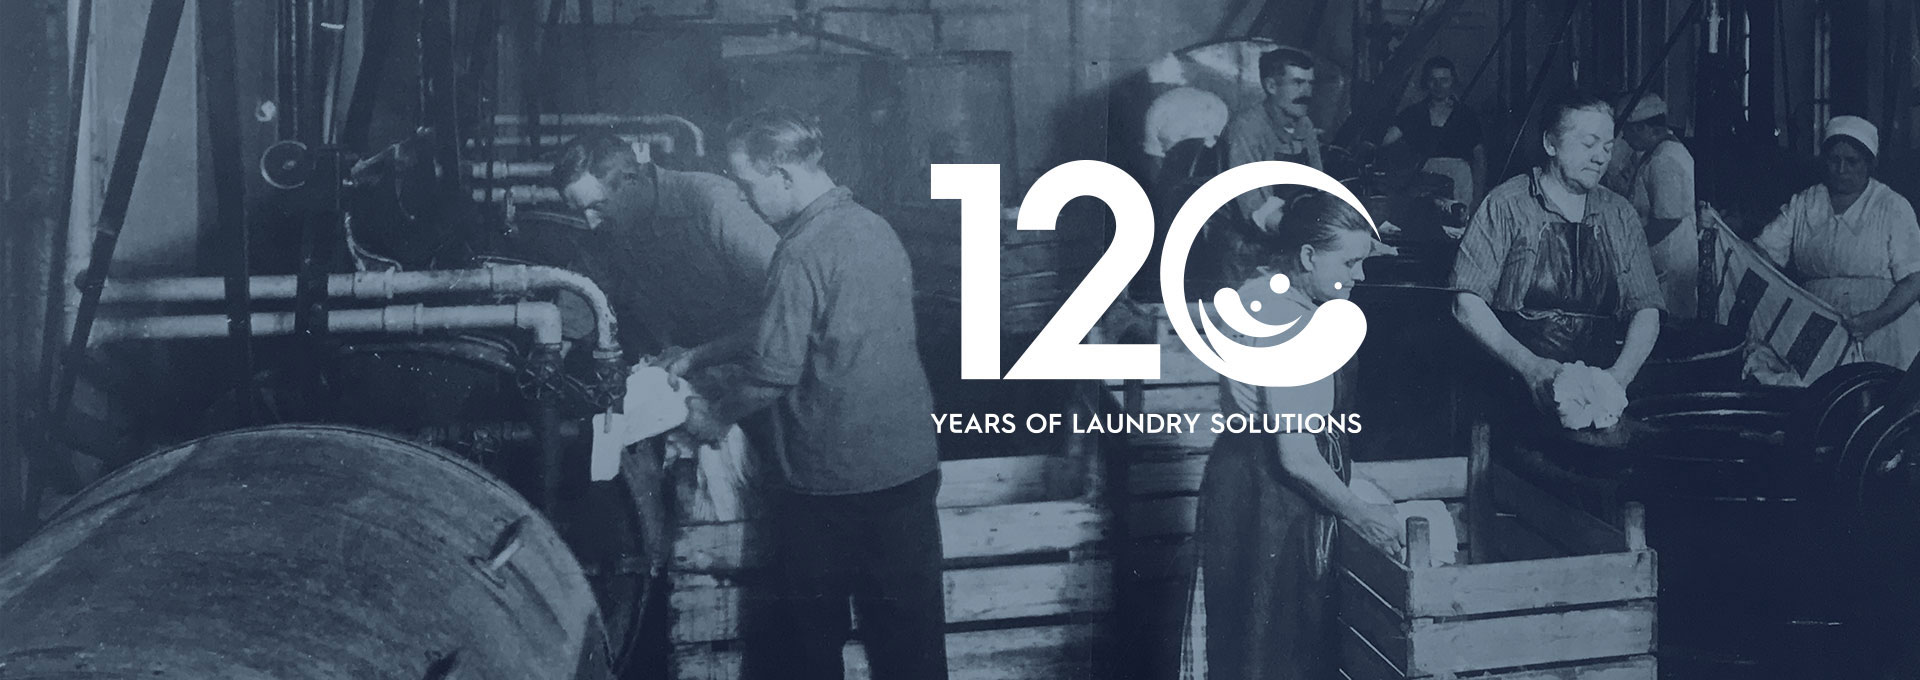 Banner escritorio aniversario lavanderia 120 años